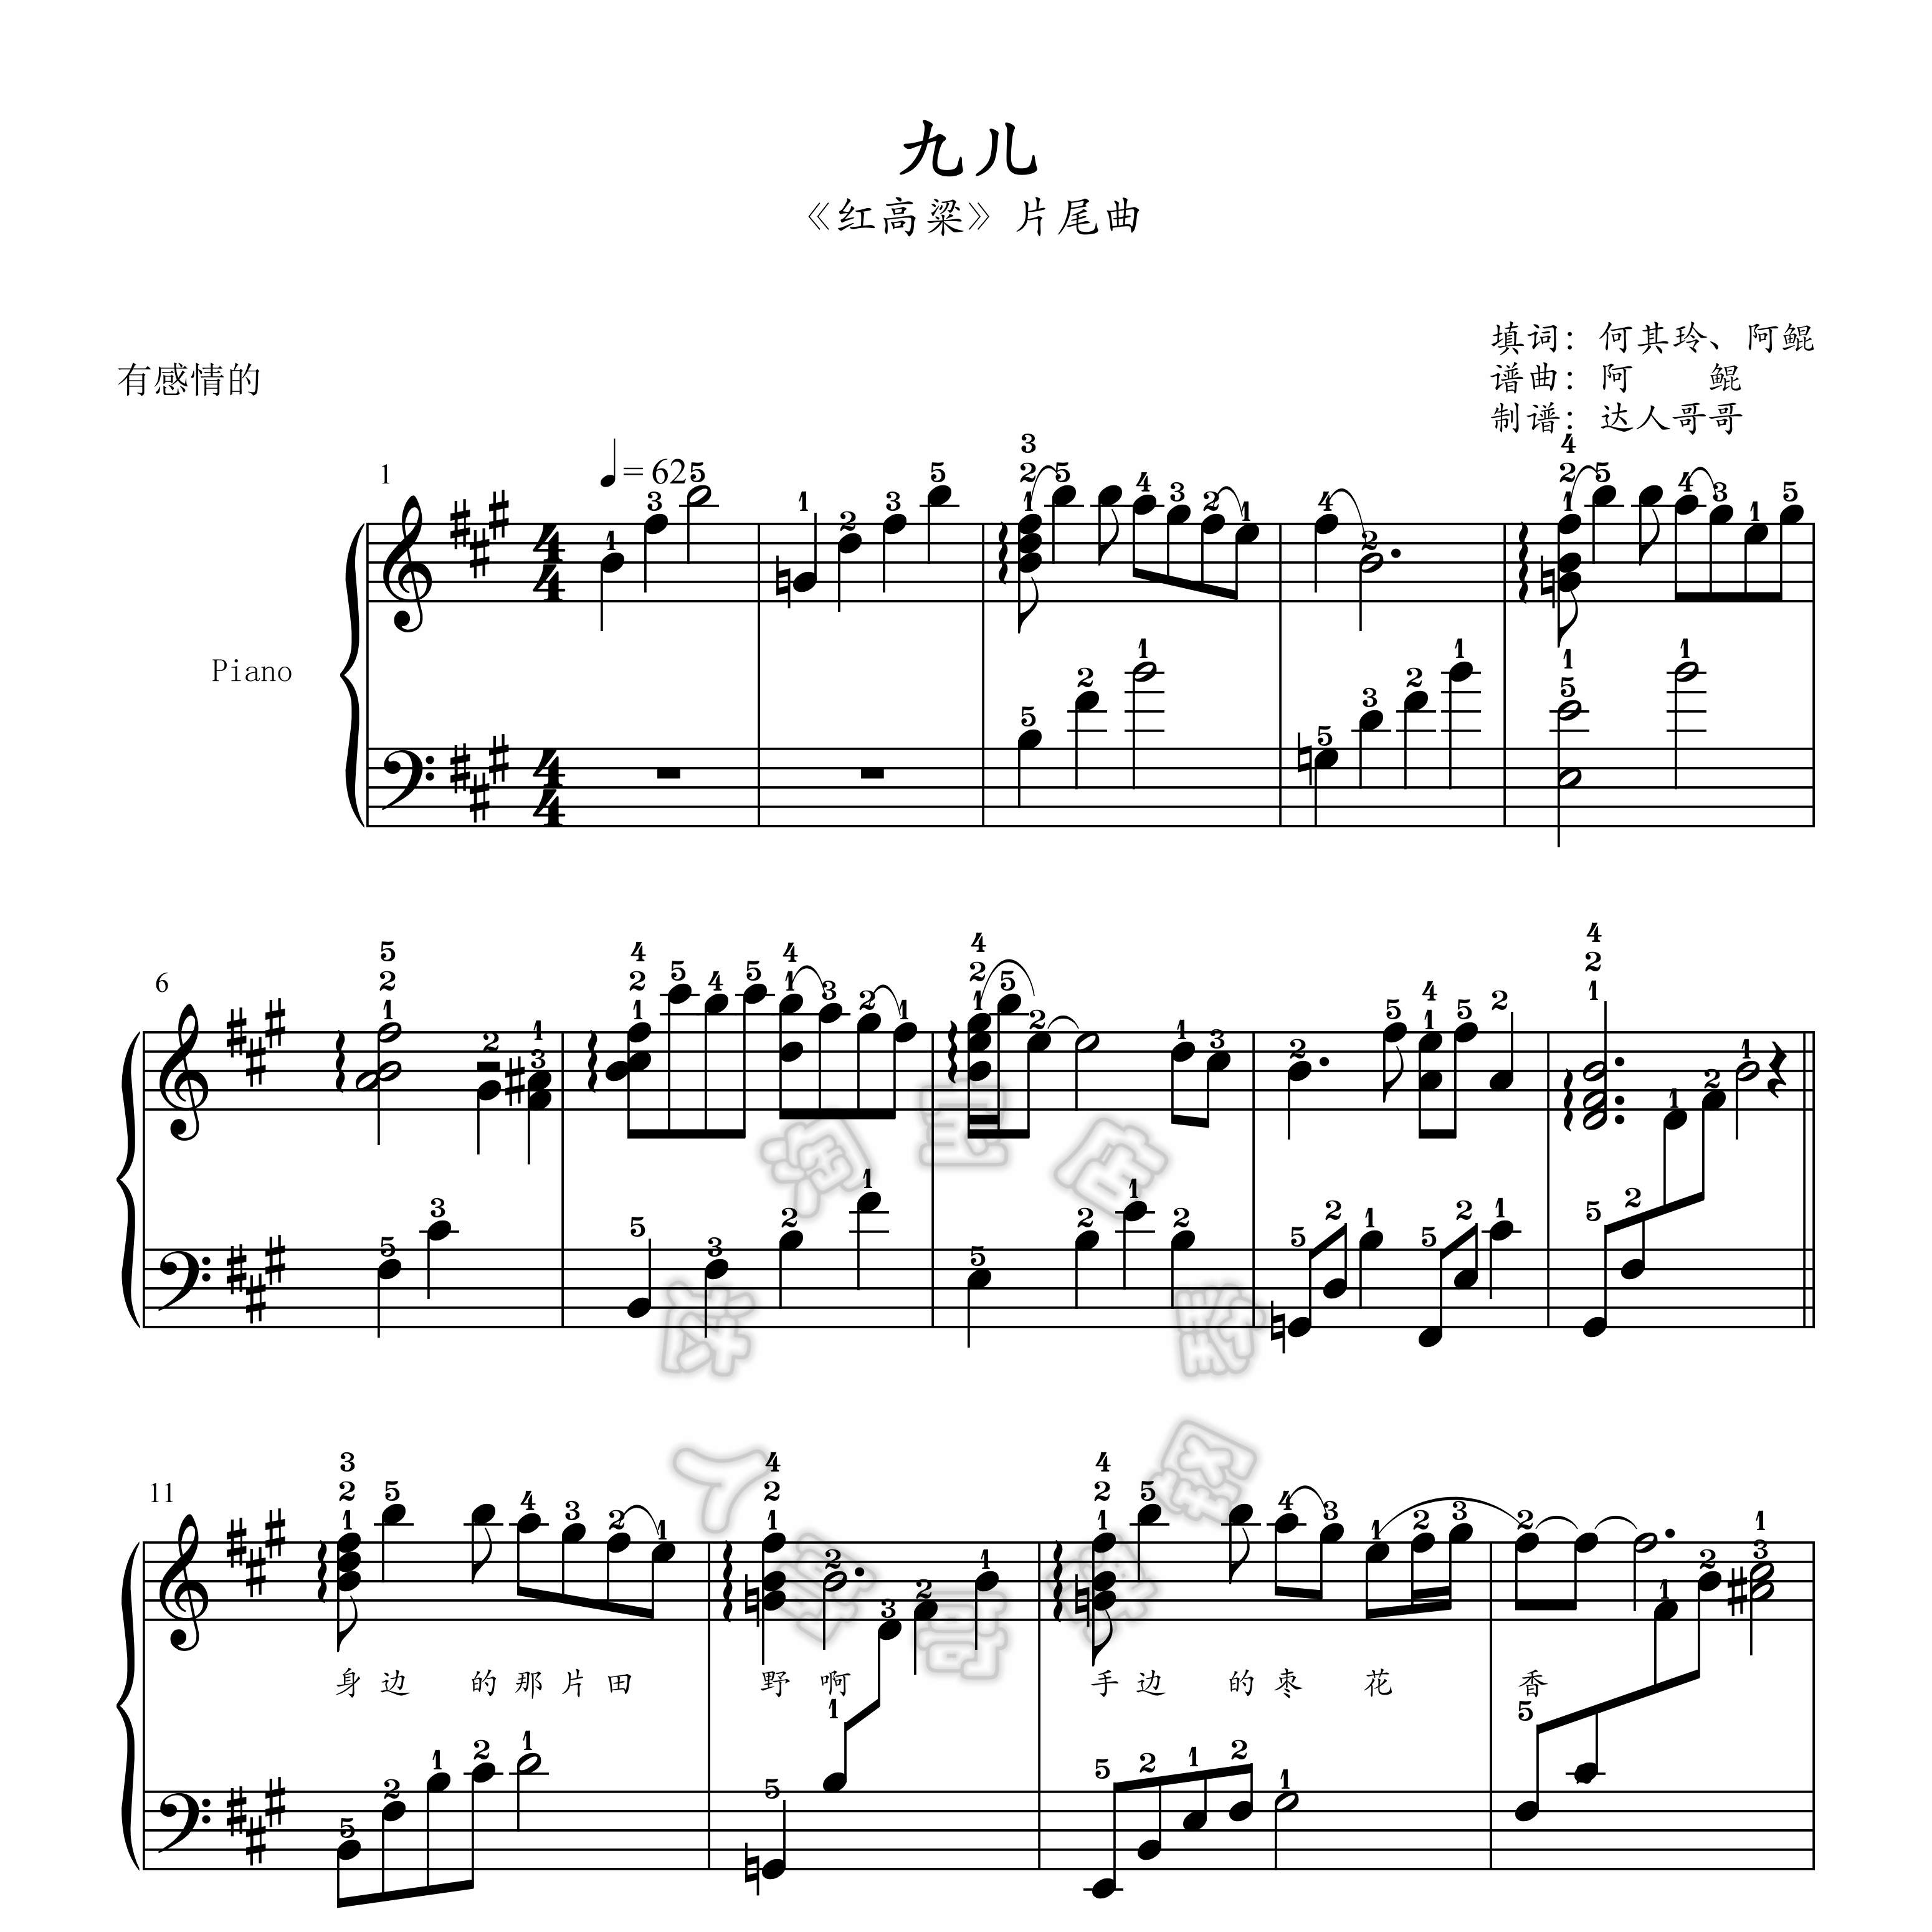 九儿钢琴谱 带指法 2页免翻 红高粱 超清原版 独奏表演